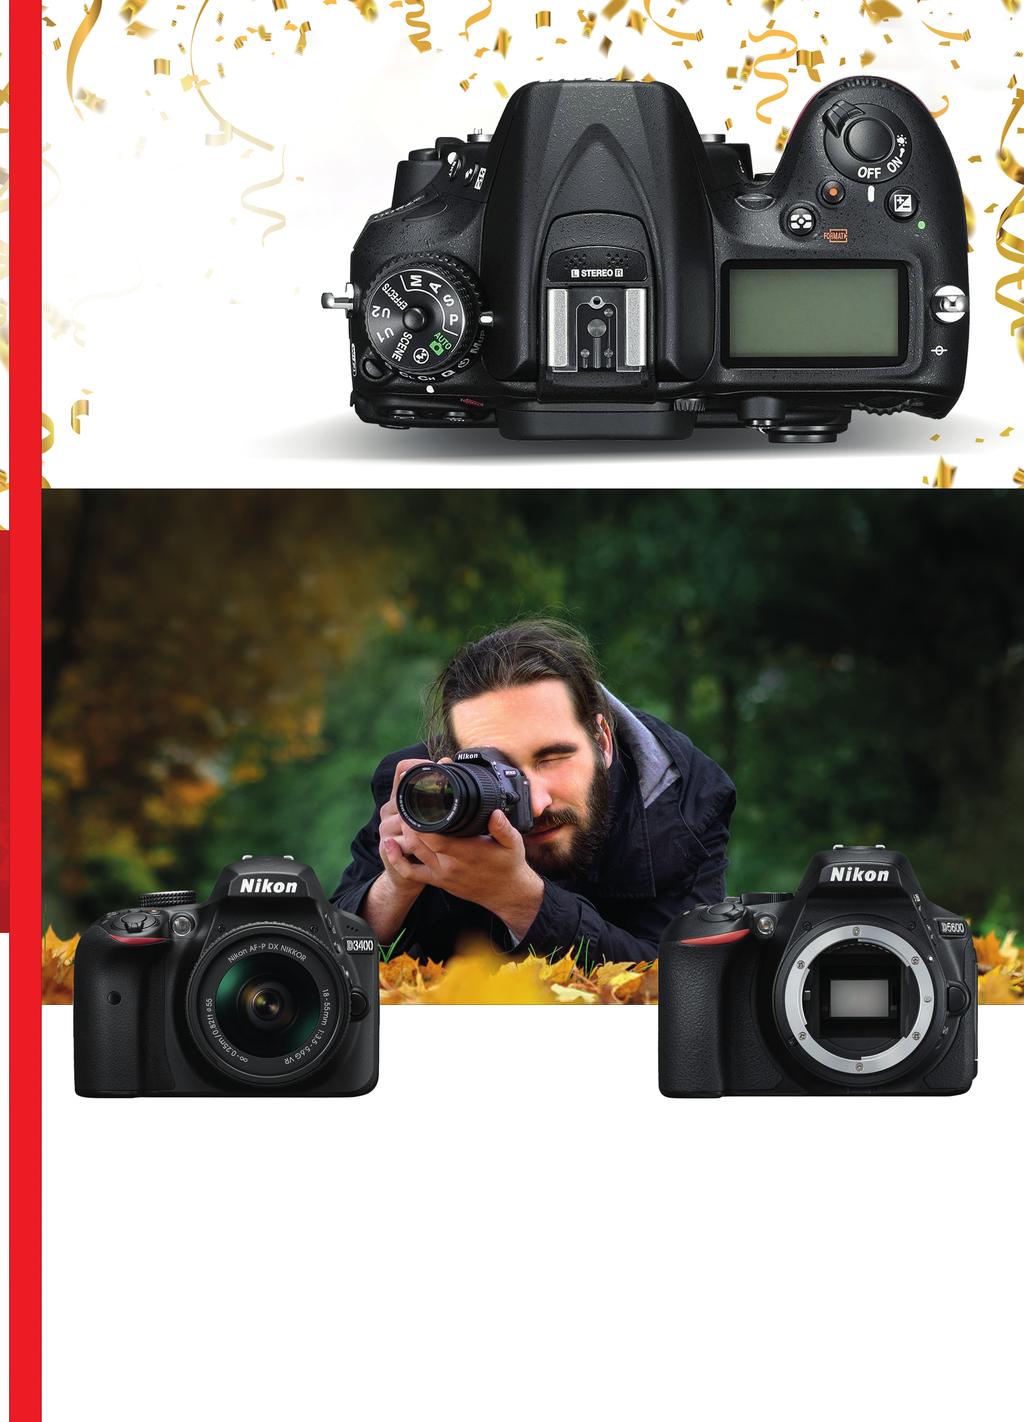 Zrcadlovky Nikon Nikon D7200 Obrazová kvalita a pokročilé ovládací prvky, které uspokojí náročné amatéry i profesionály 24,2Mpx snímač CMOS formátu DX 51bodový AF modul Multi-CAM 3500 II Konstrukce